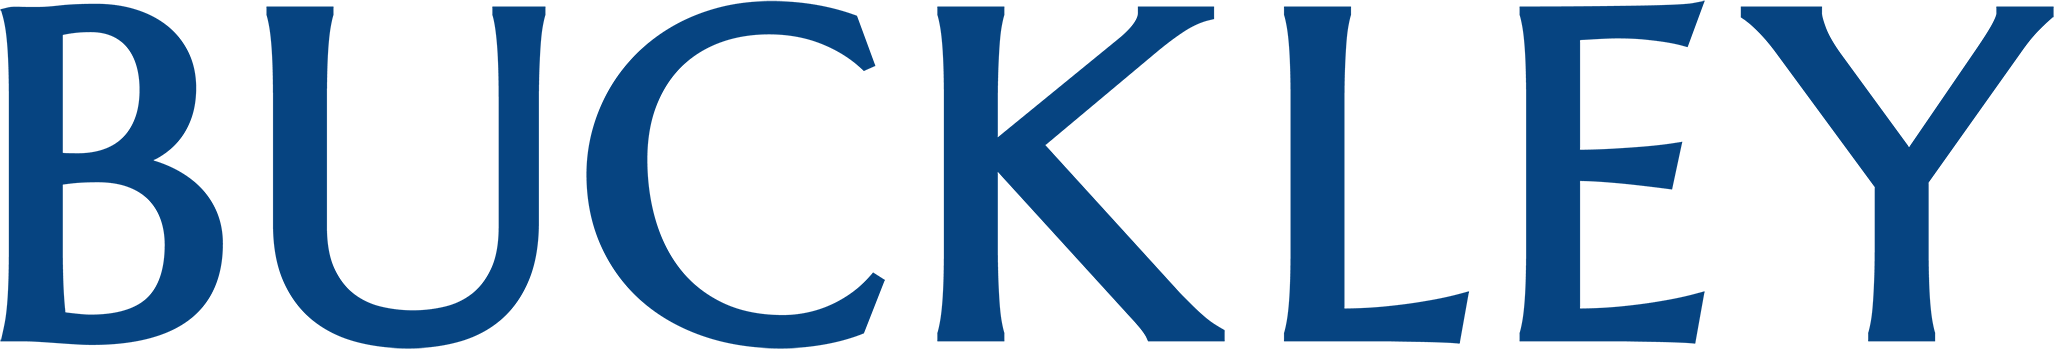 Buckley LLP logo